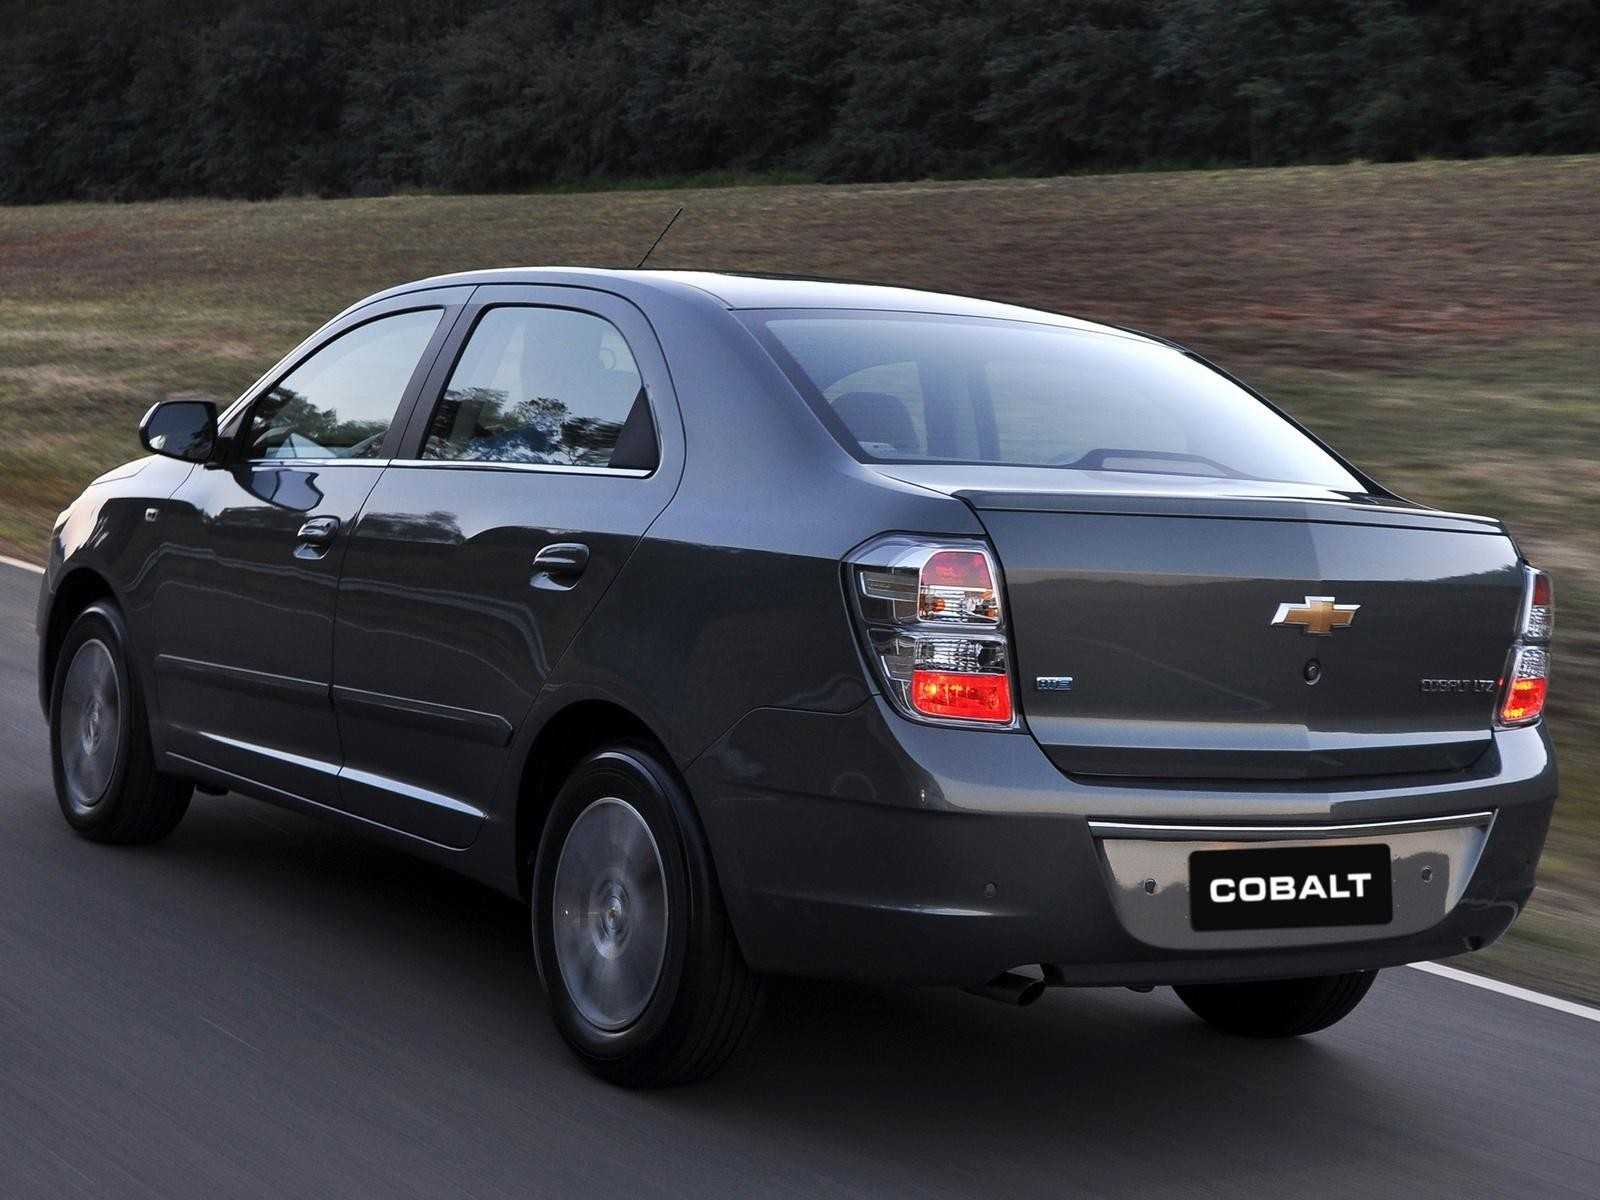 Chevrolet cobalt ss содержание а также детали модели